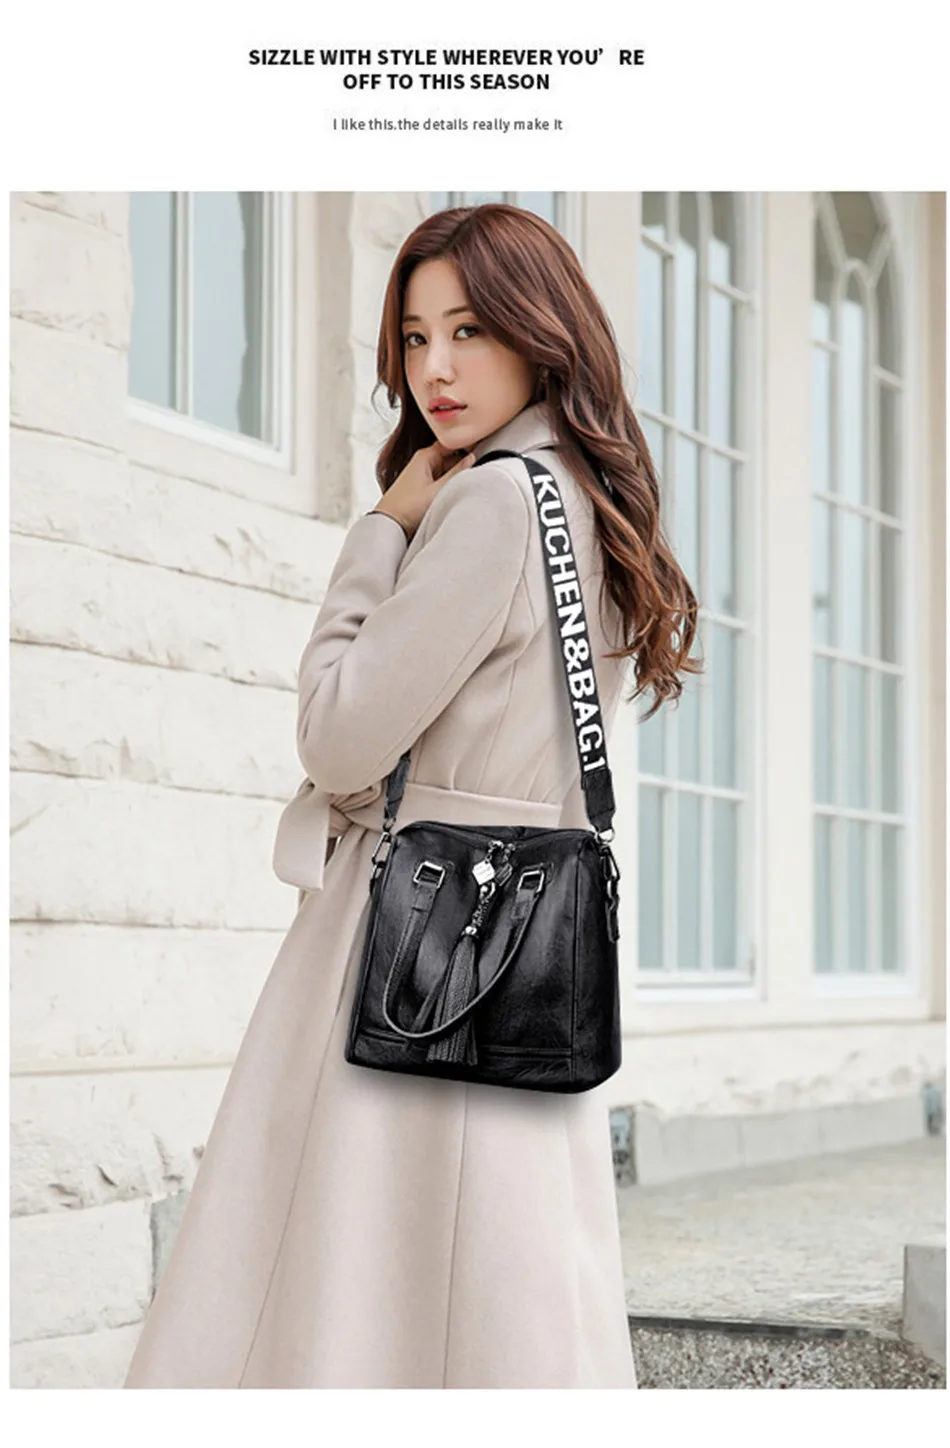 Роскошные кожаные женские сумки, дизайнерские сумки высокого качества, женская сумка через плечо, женская сумка через плечо